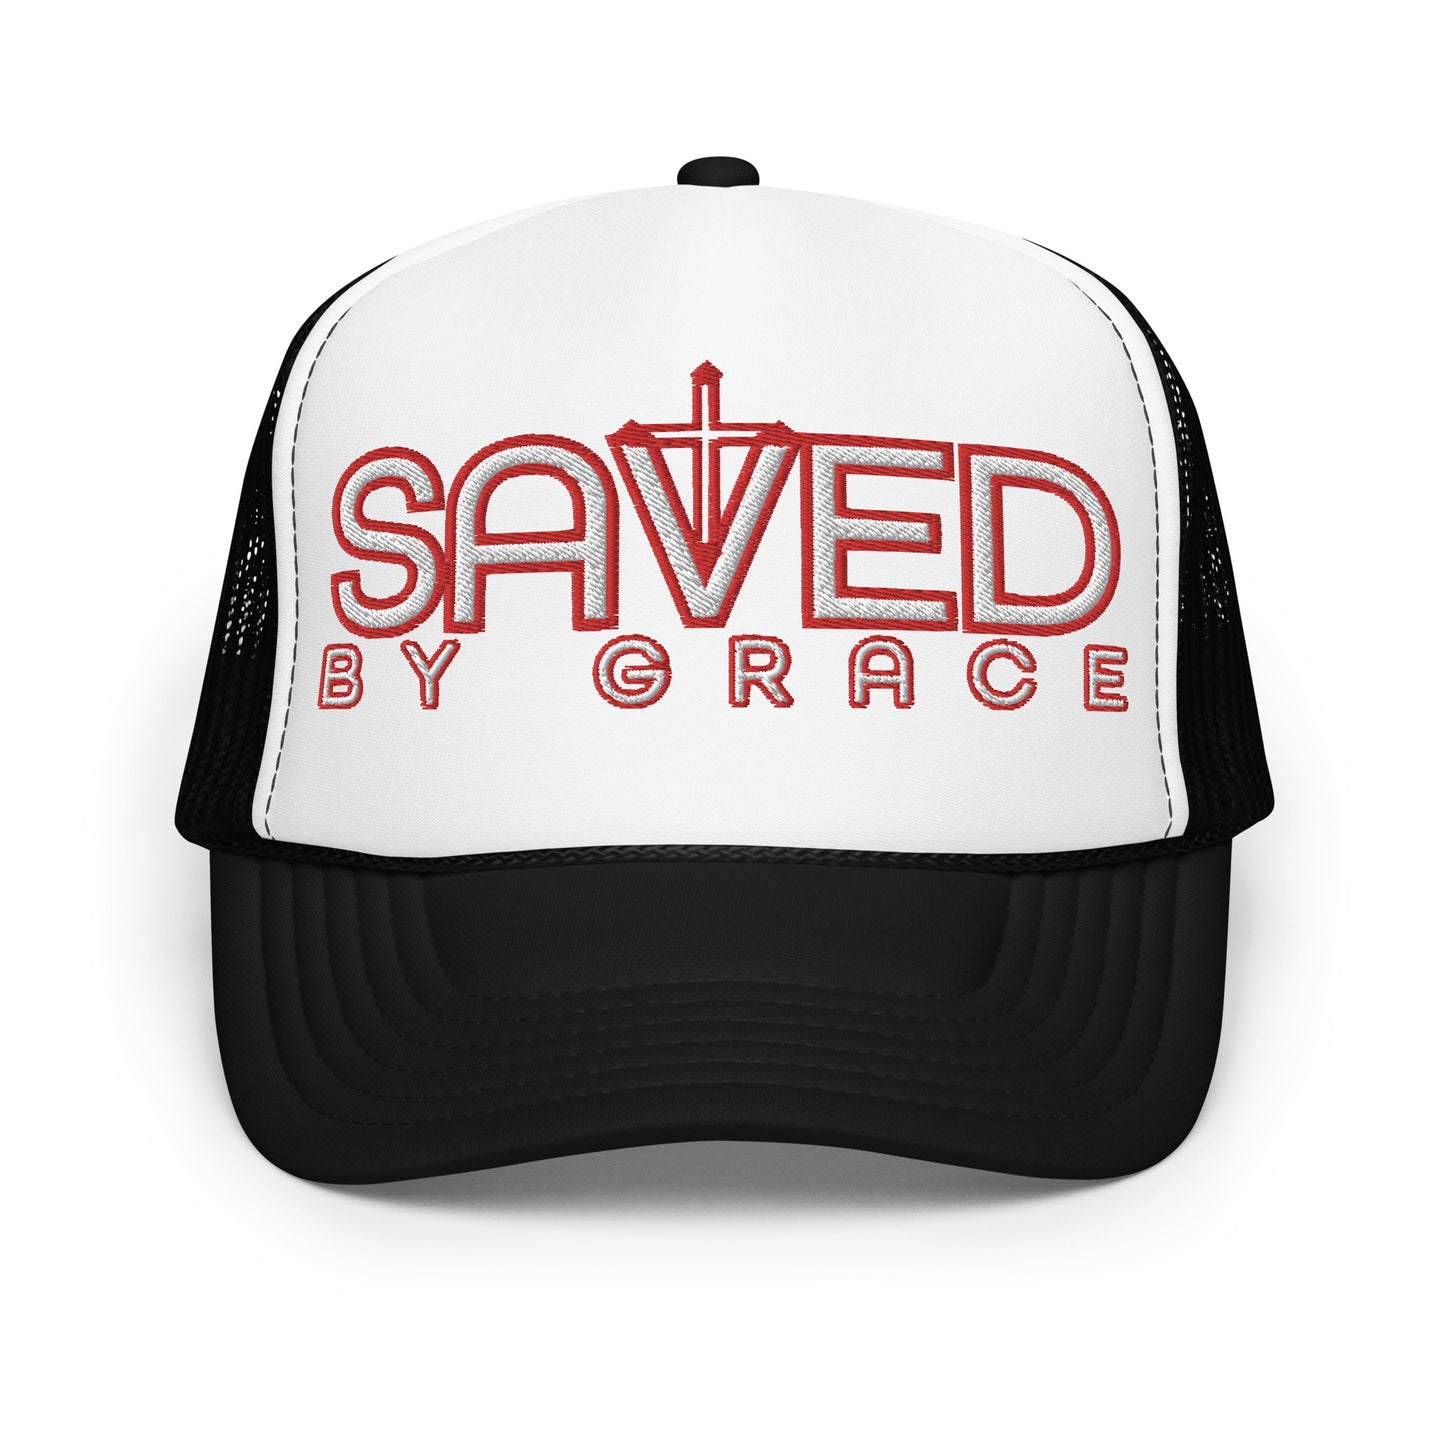 SAVED BY GRACE- Foam trucker hat